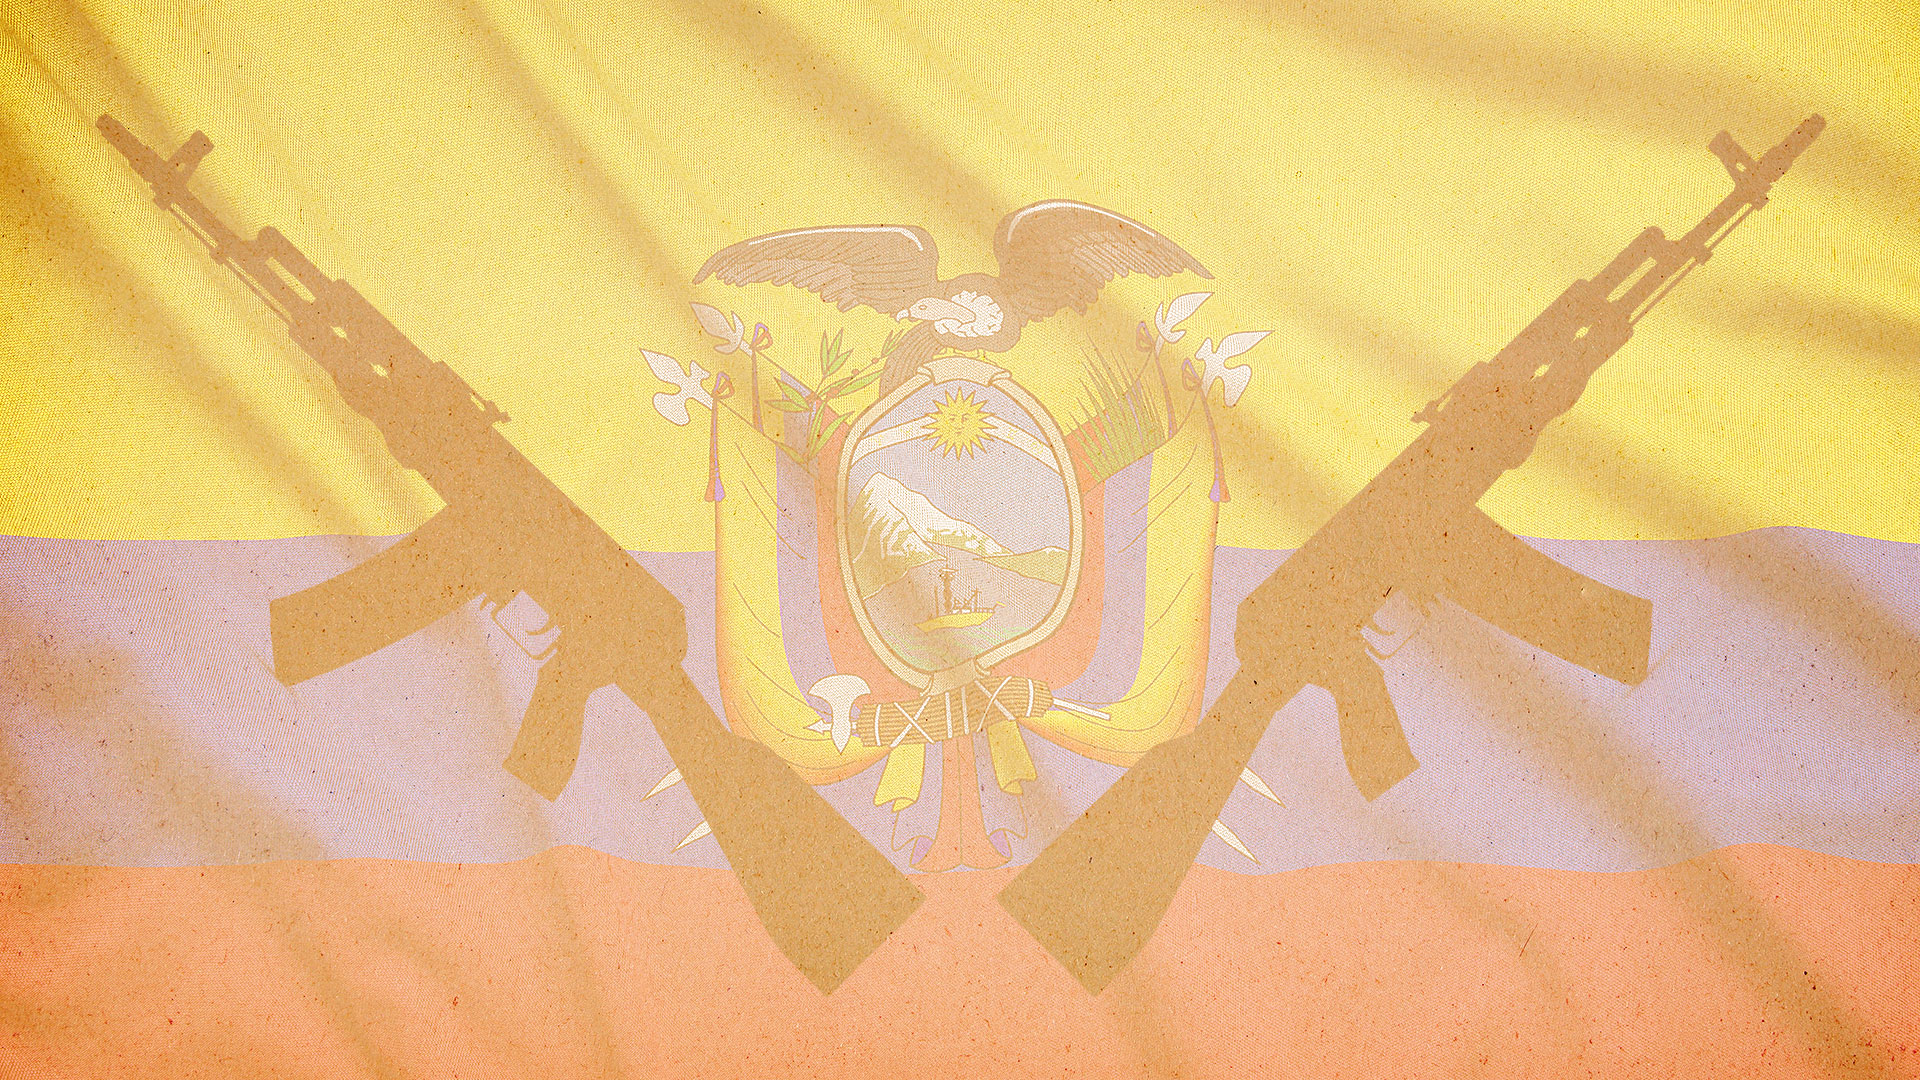 Le drapeau de l'Équateur avec deux fusils ajoutés par dessus en contraste